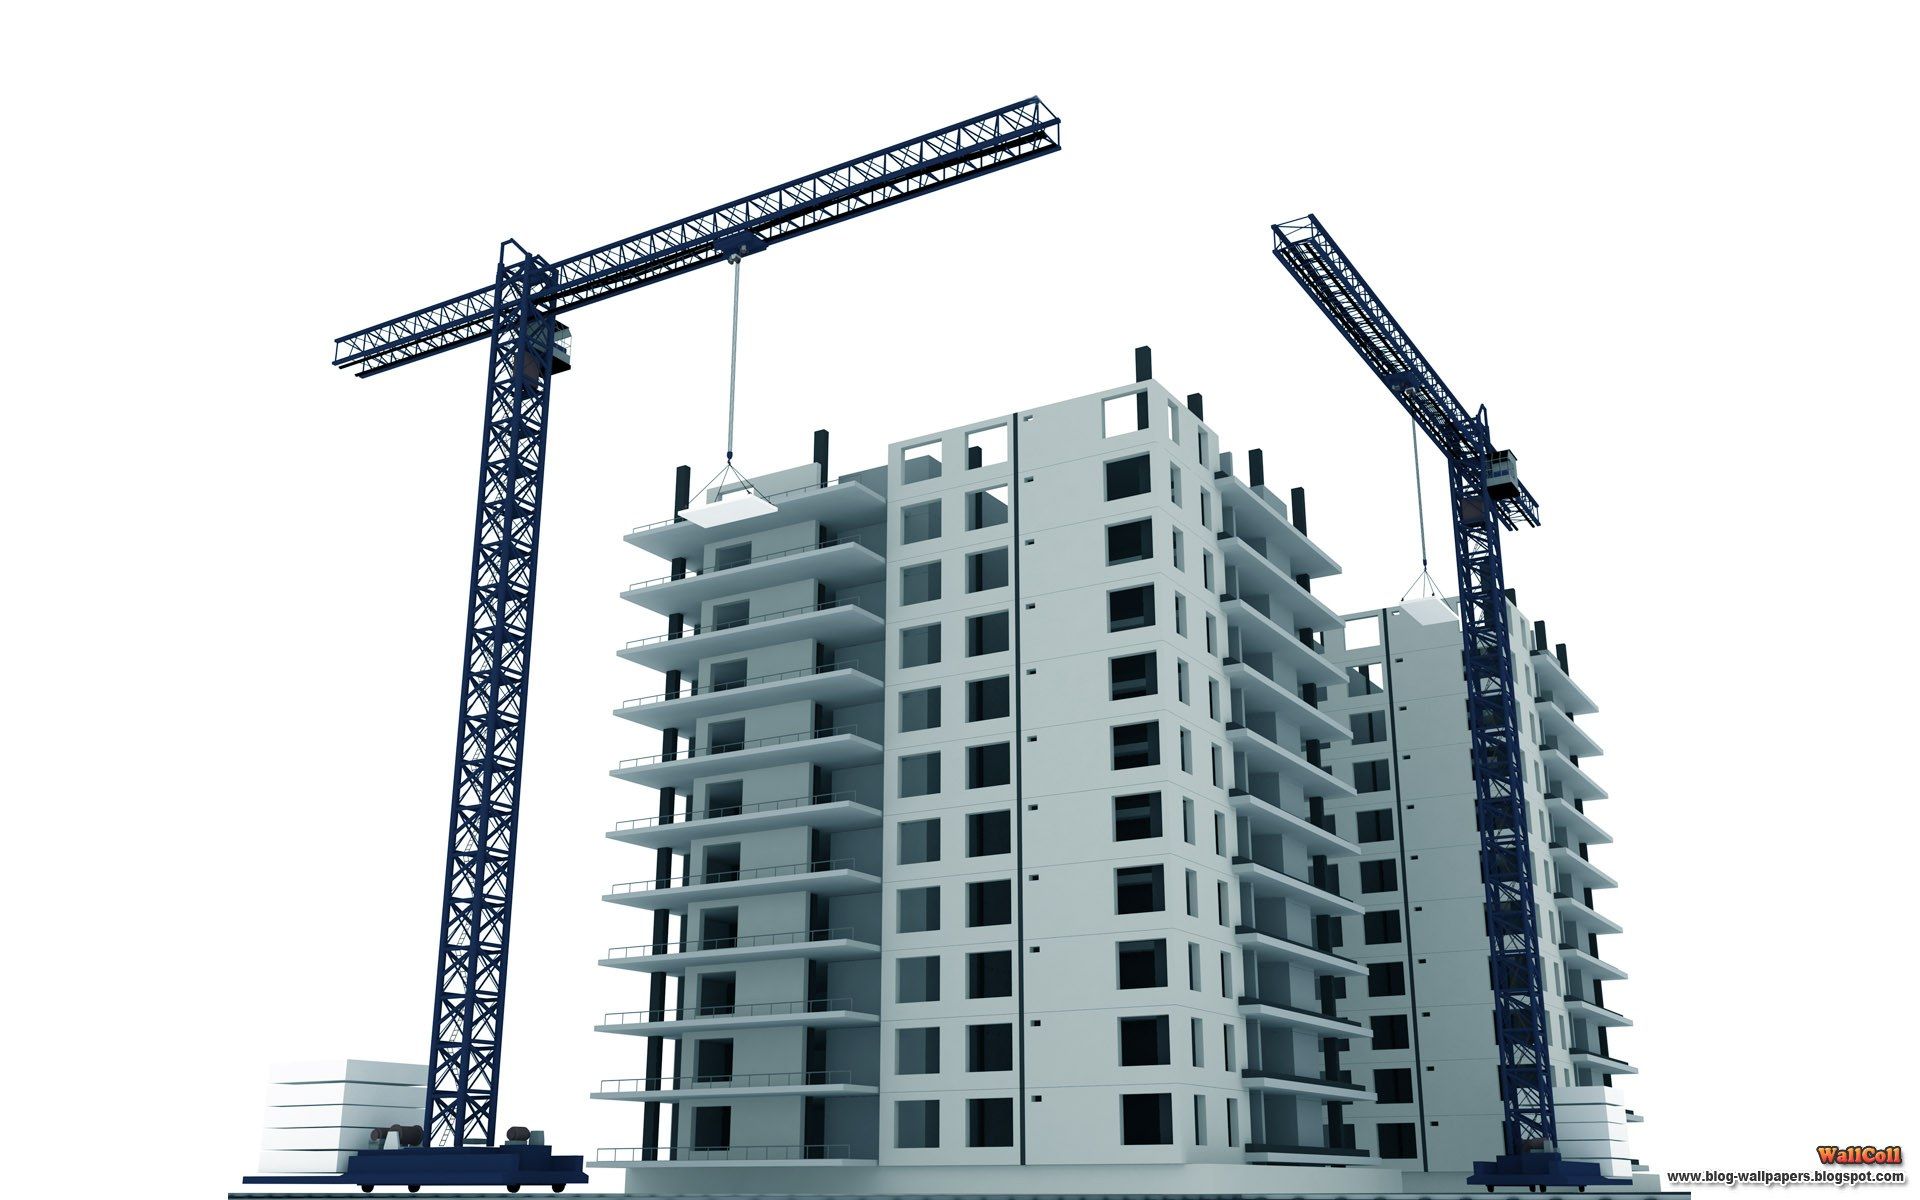 BUILDING CONSTRUCTION | House Design | Construction Pictures ...